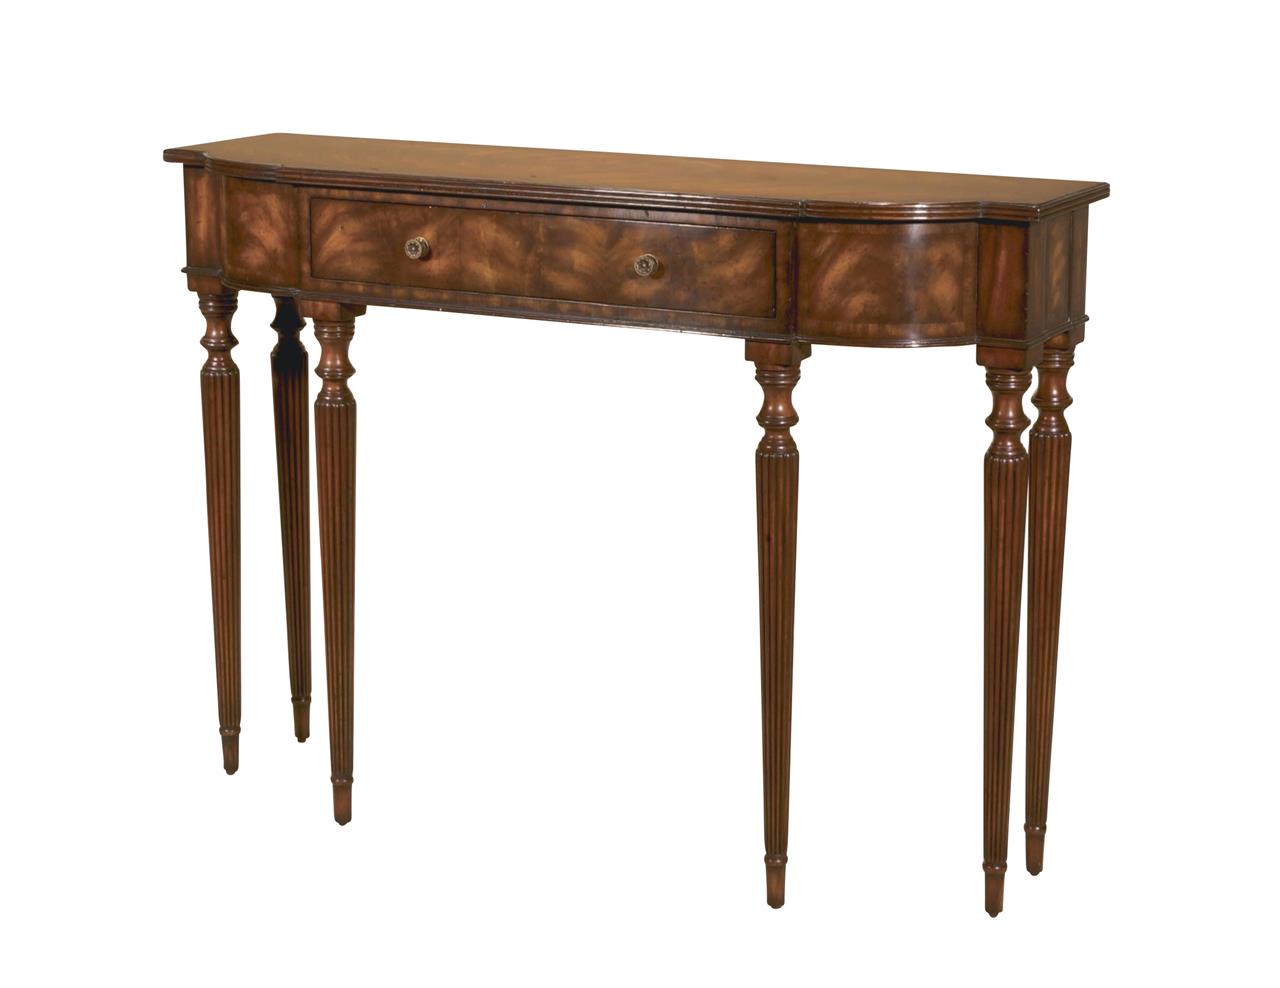 Narrow mahogany console table or sofa table with Sheraton style legs